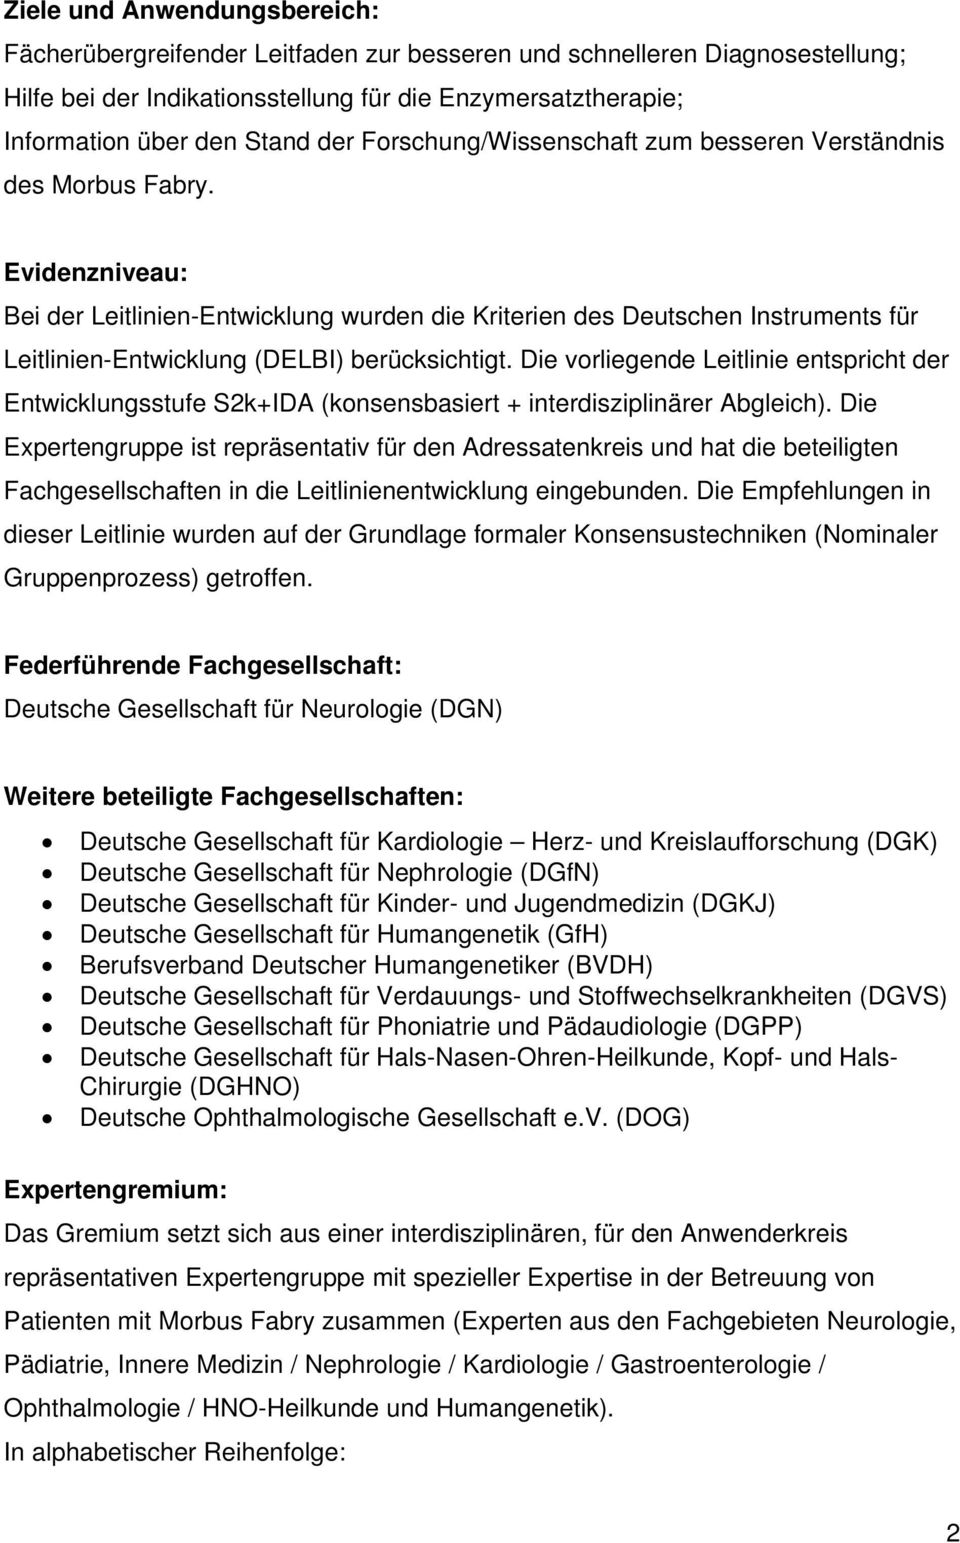 Evidenzniveau: Bei der Leitlinien-Entwicklung wurden die Kriterien des Deutschen Instruments für Leitlinien-Entwicklung (DELBI) berücksichtigt.